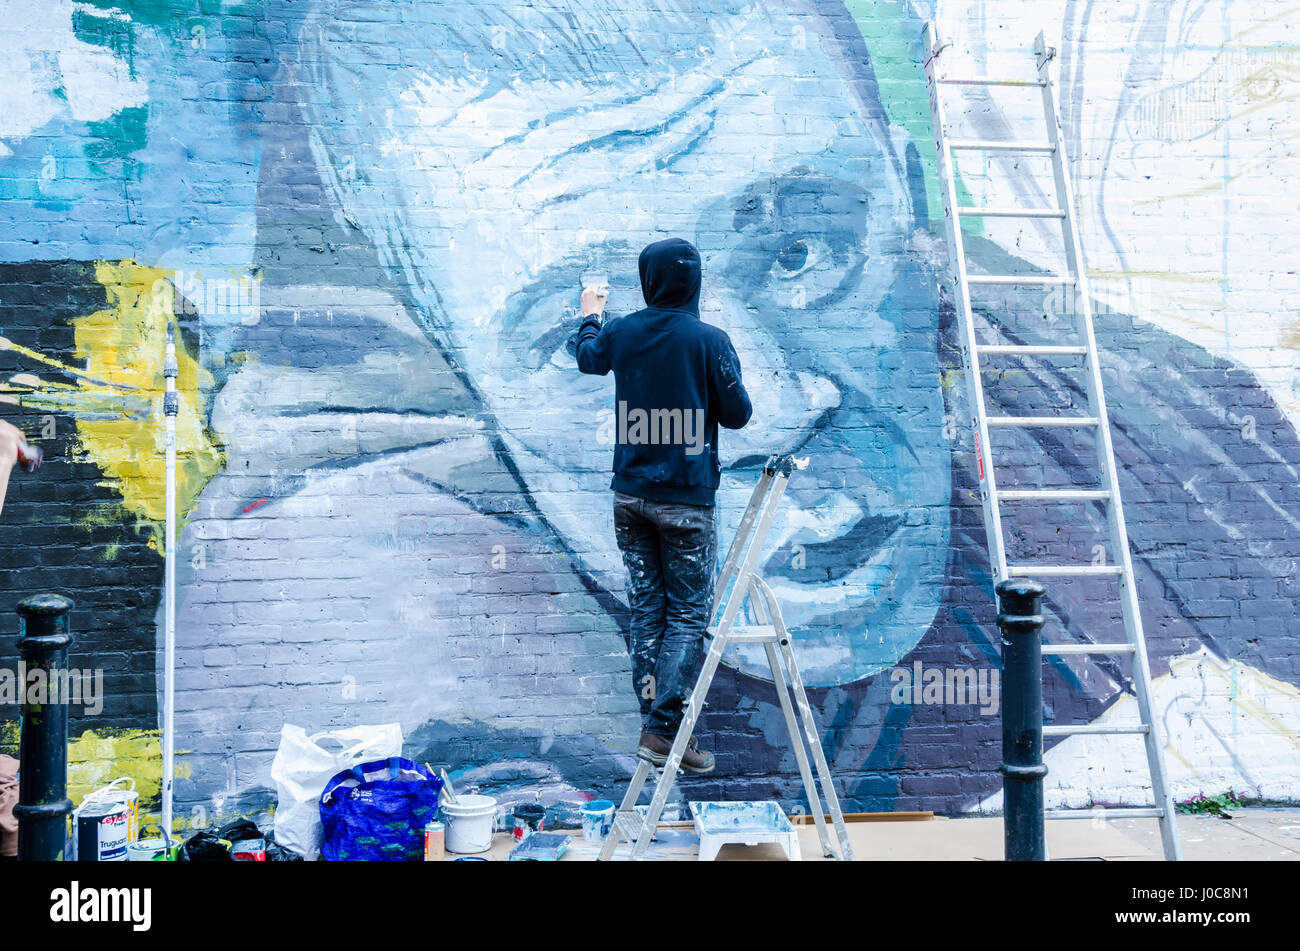 Ein Künstler, trug eine schwarze Kapuzenjacke schafft ein Kunstwerk durch das Malen ein Wandbild an der Wand in der Hanbury Street in East London. Stockfoto